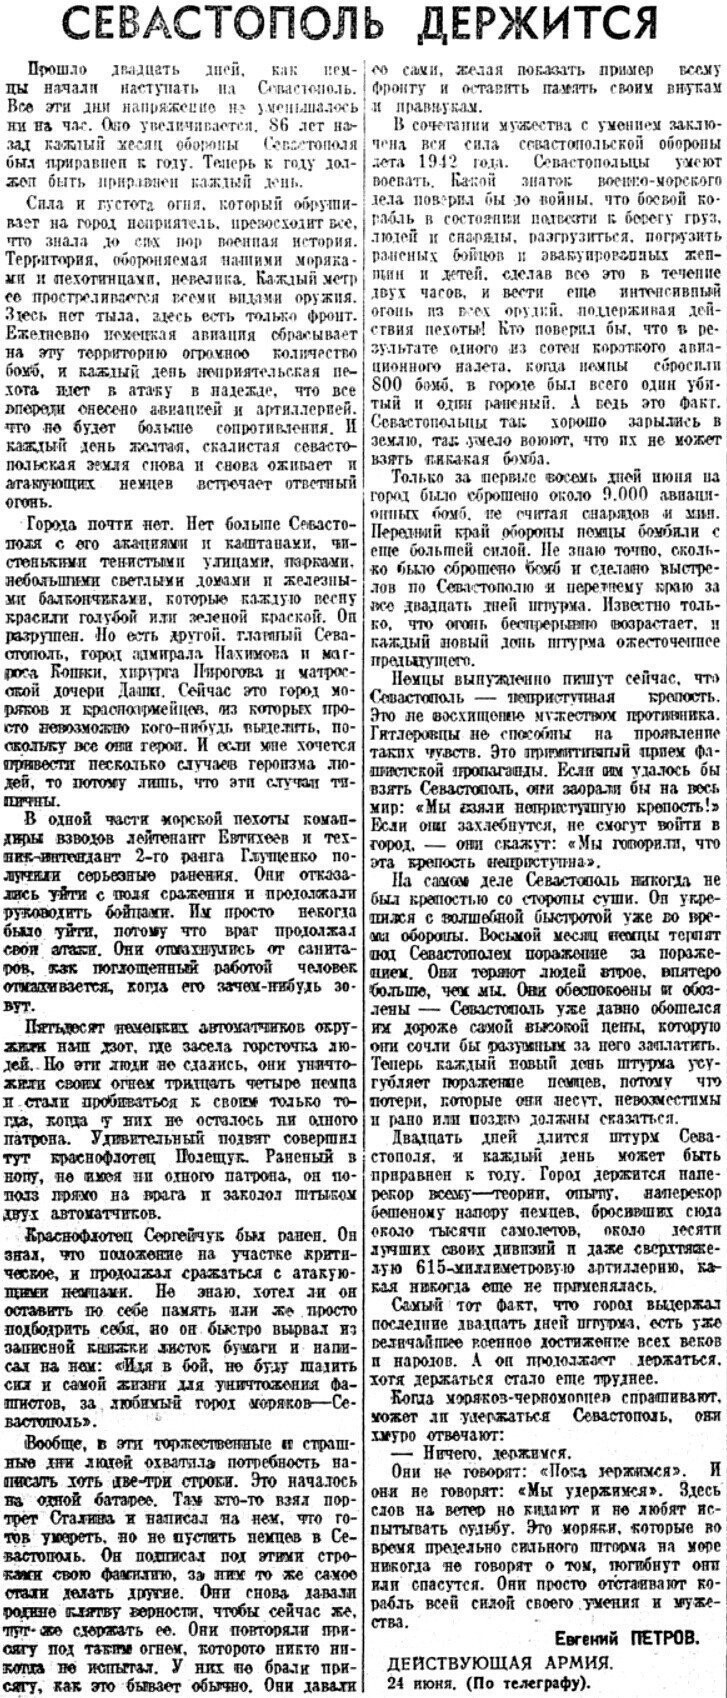 «Красная звезда», 25 июня 1942 г.